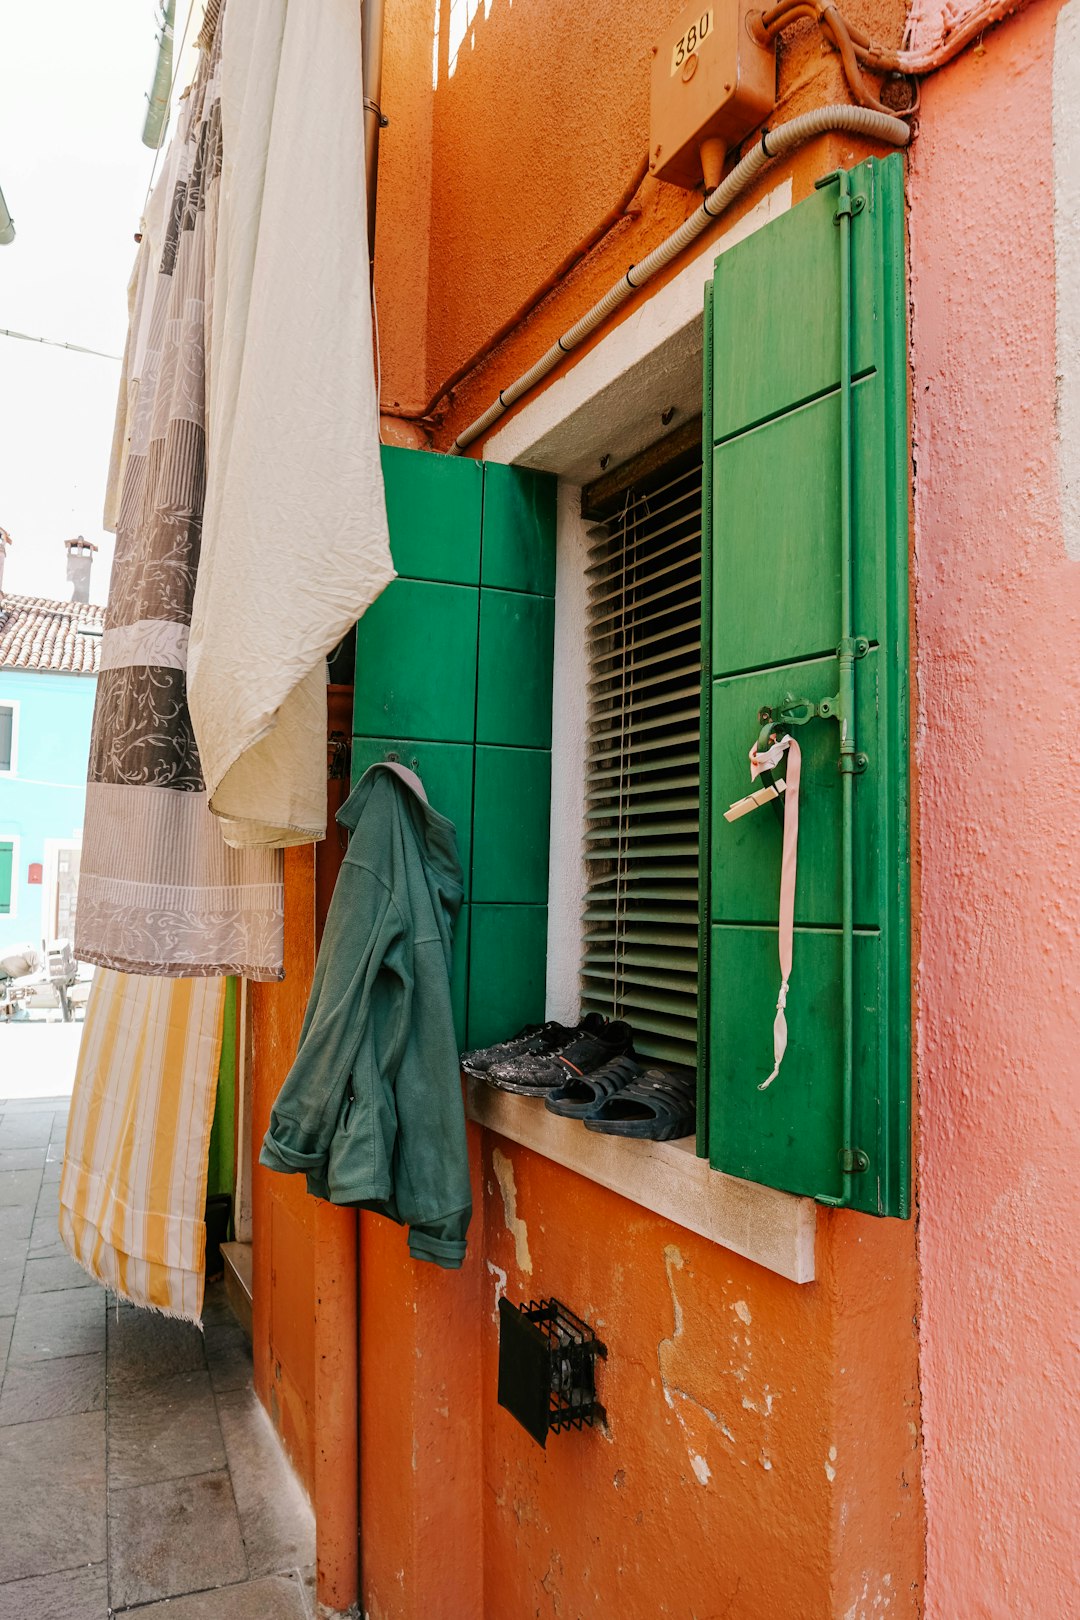 white towel hanged on green wooden door